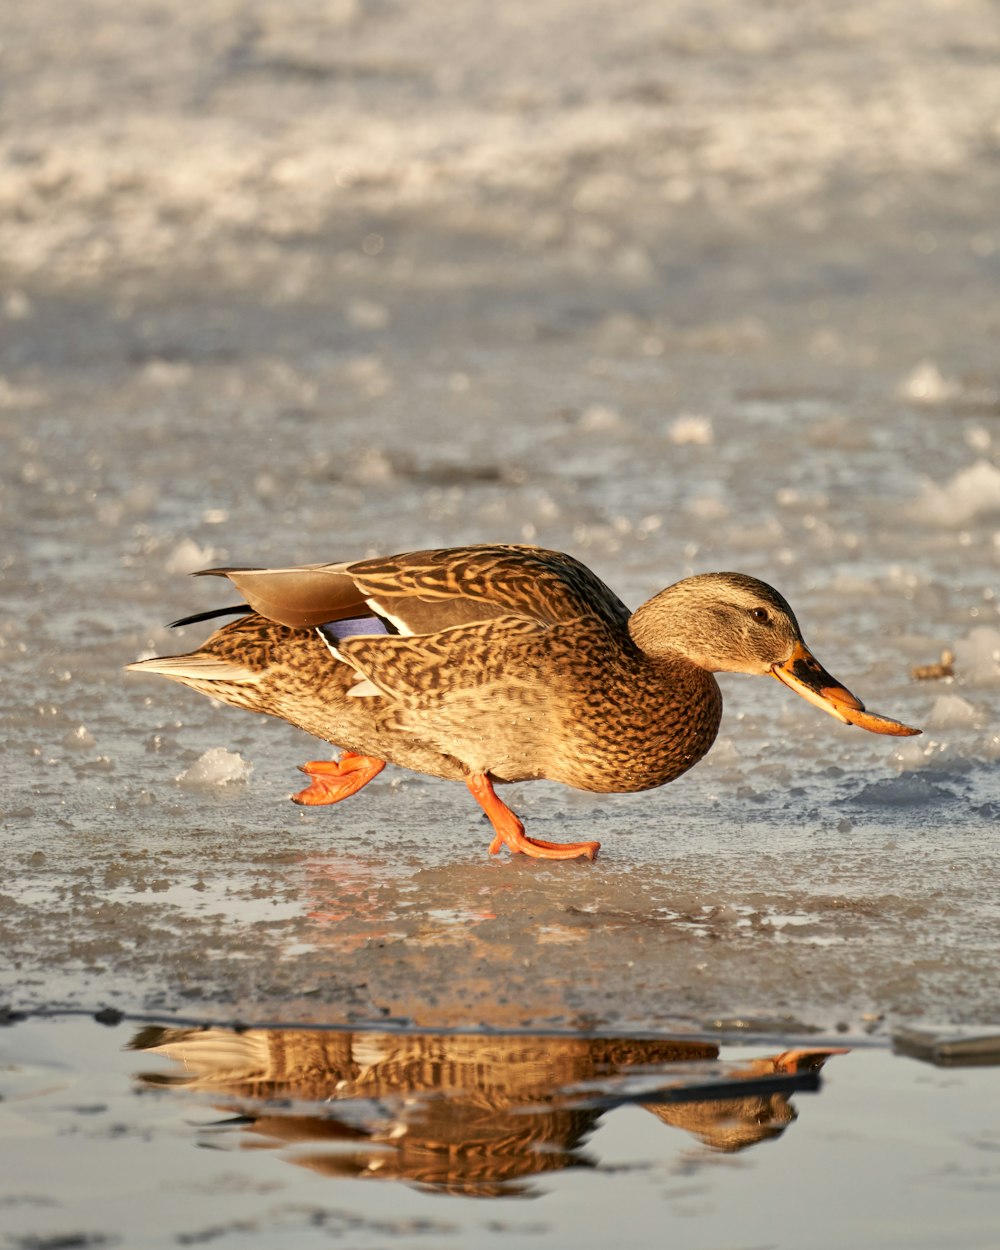 Eine Ente läuft auf dem Eis im Wasser